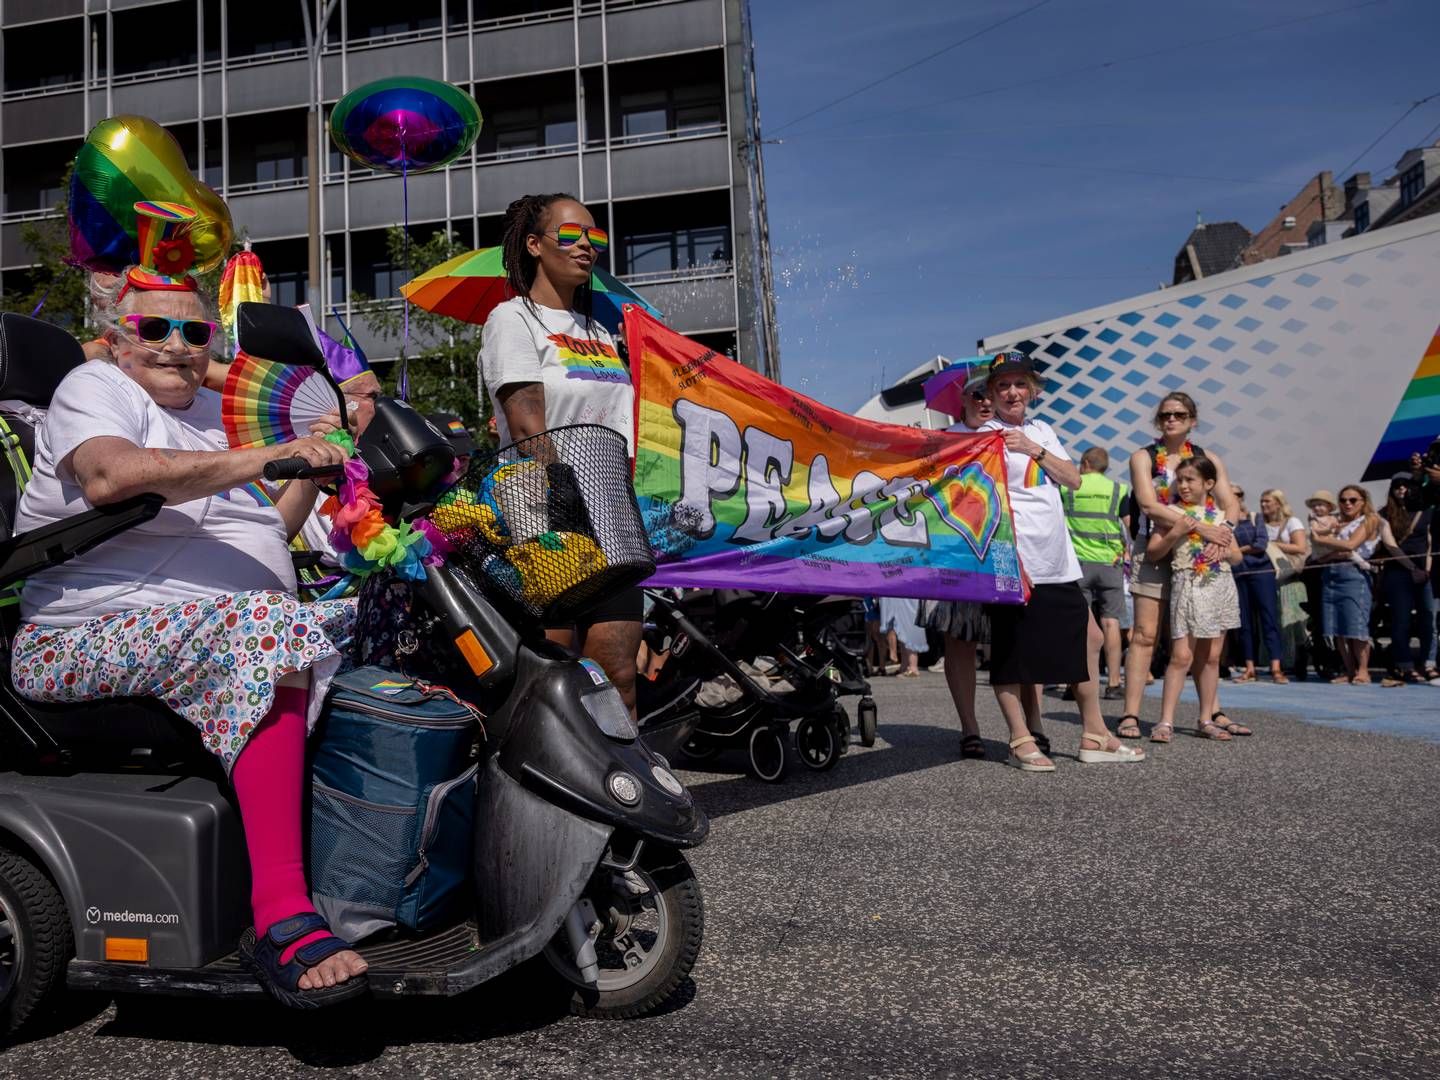 Copenhagen Prides udmeldte krav til partnere blev genstand for kritik fra flere steder, og ifølge Kresten Schultz Jørgensen viser sagen vigtigheden af at sikre, at ens politiske standpunkter både er substantielle og gennemtænkte. | Foto: Mads Nissen/Ritzau Scanpix